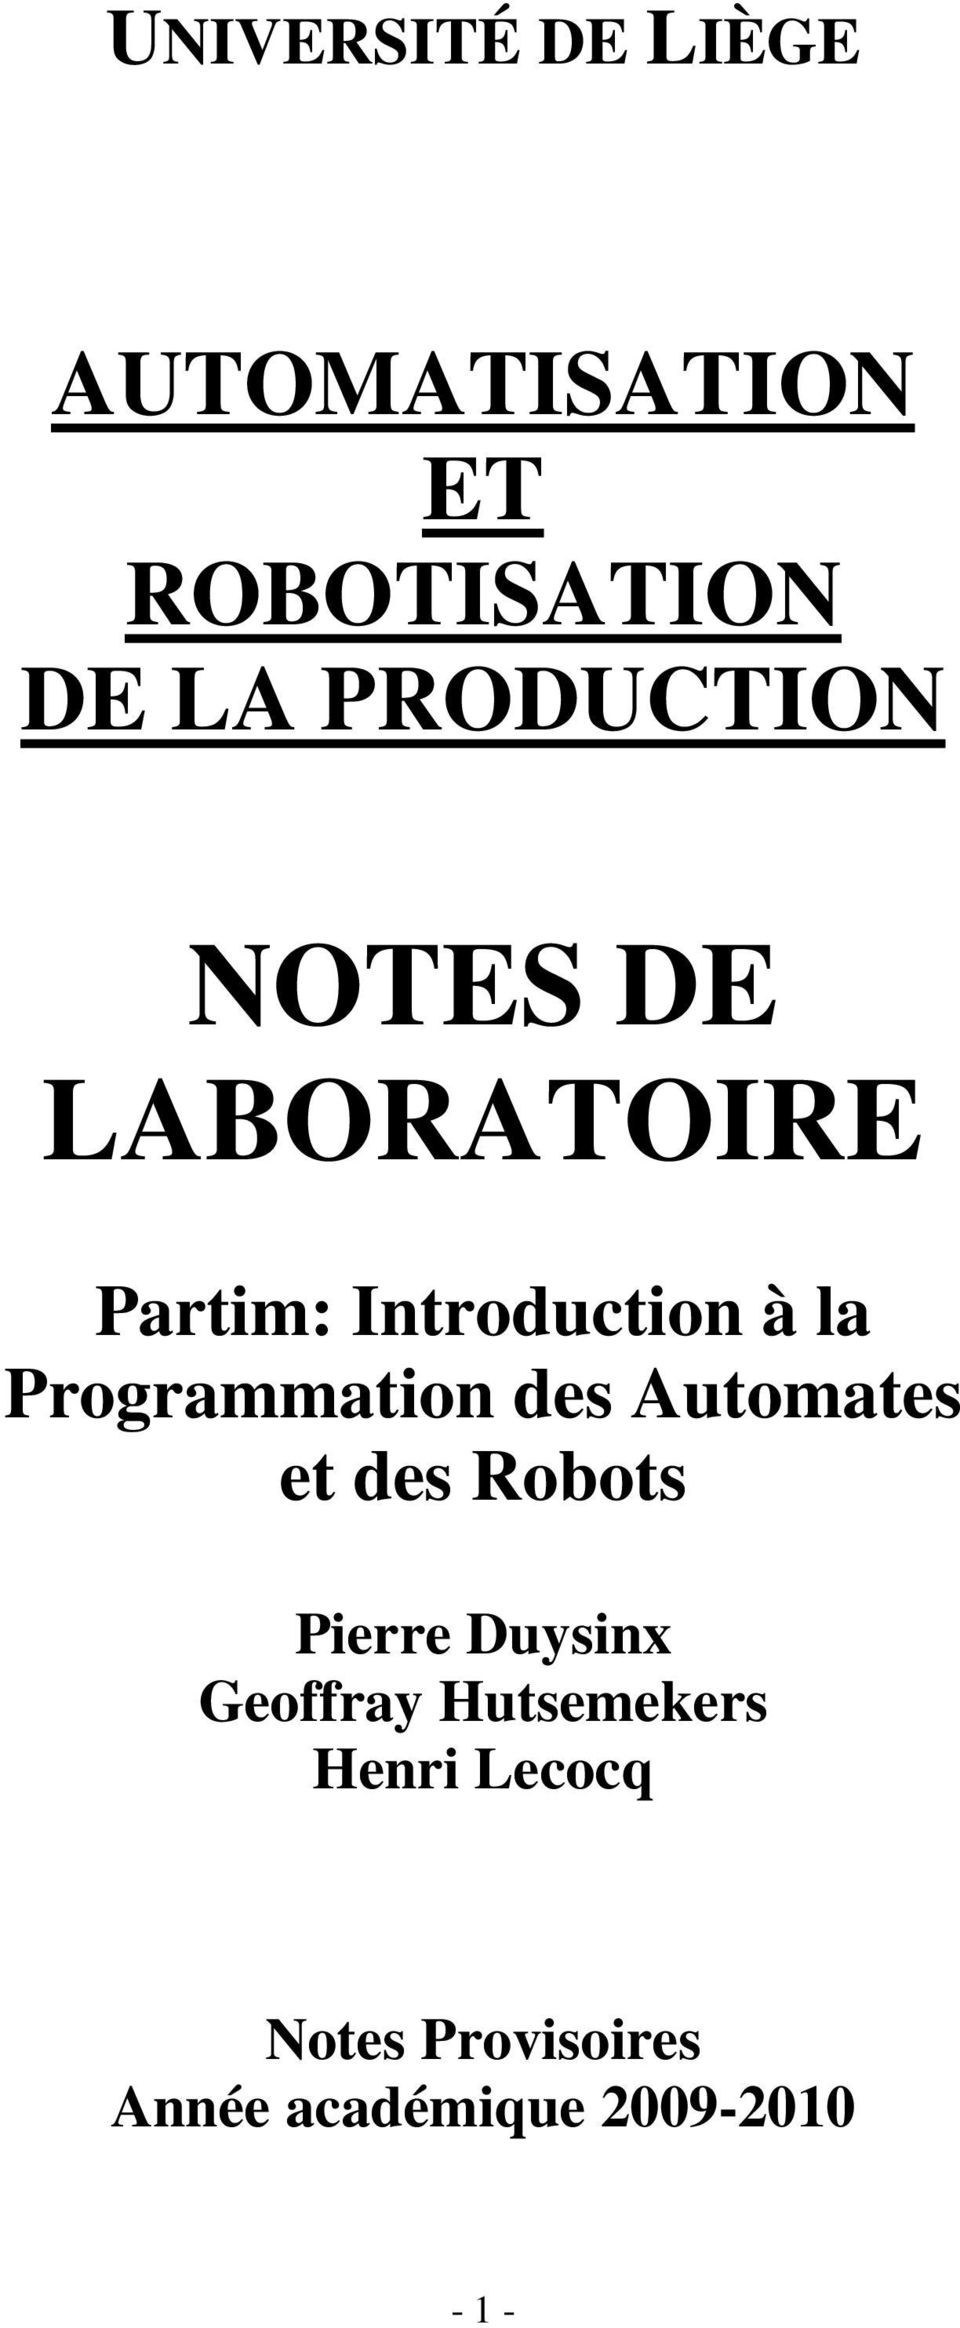 Programmation des Automates et des Robots Pierre Duysinx